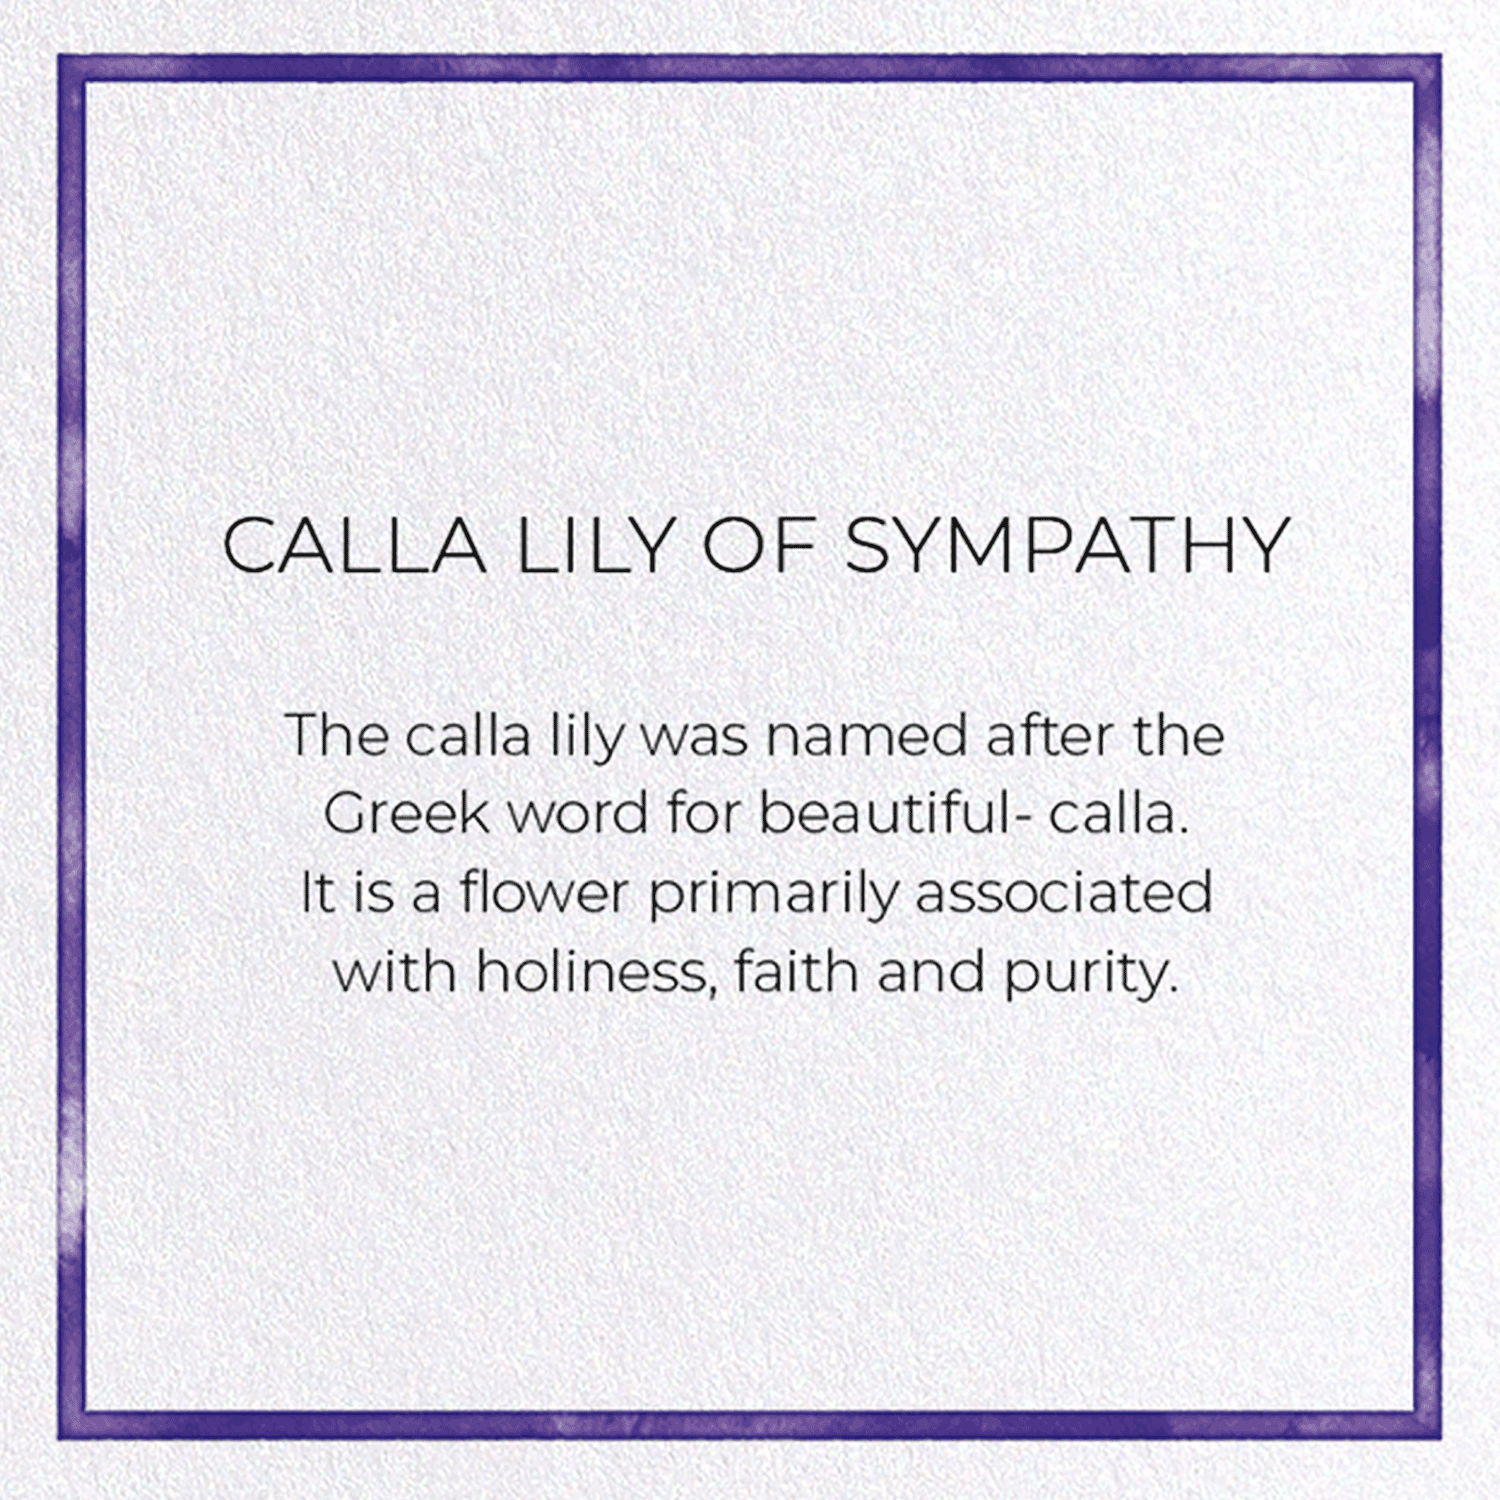 CALLA LILY OF SYMPATHY